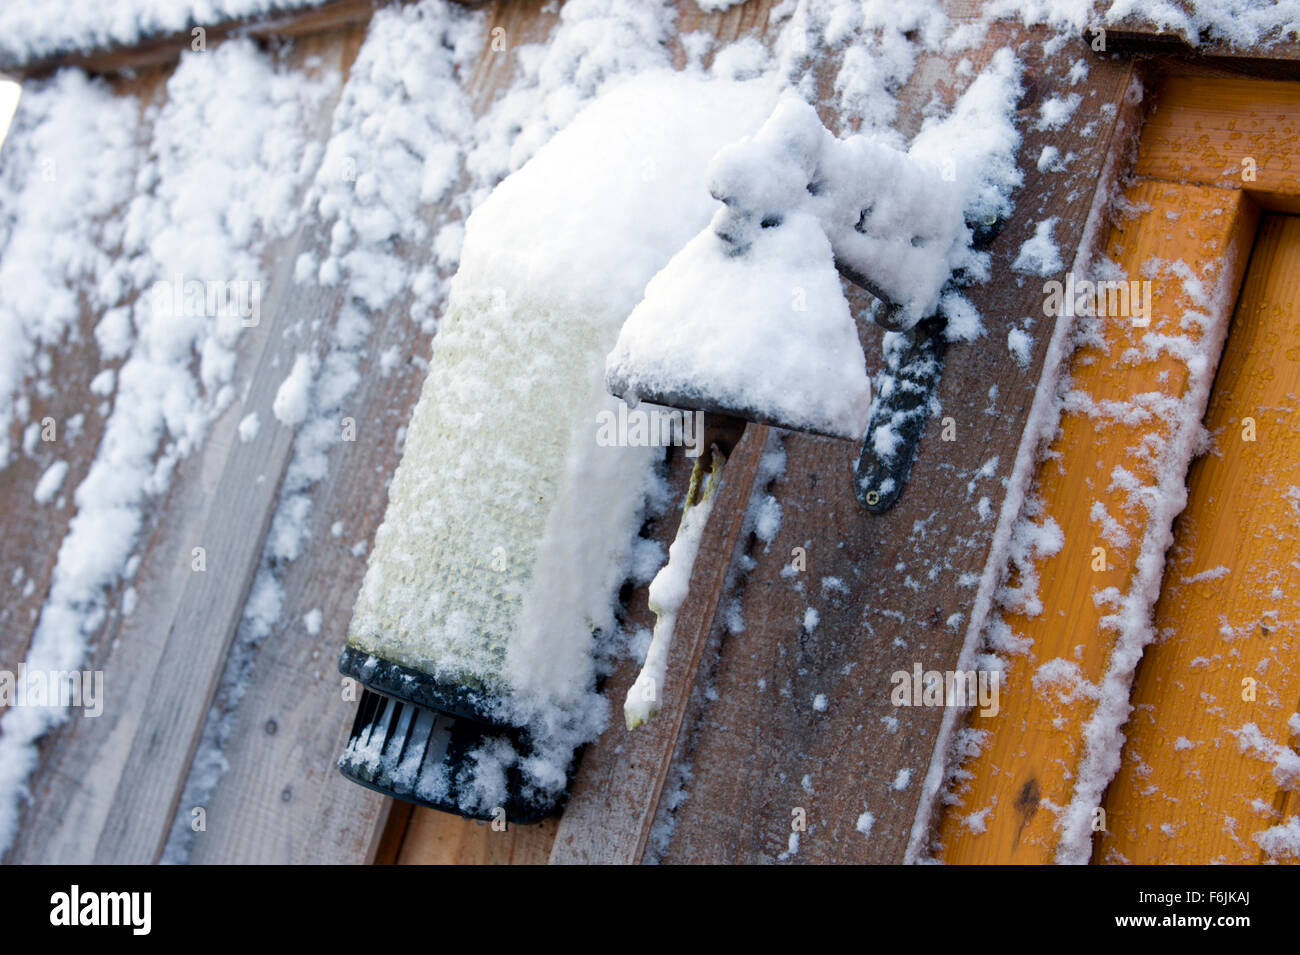 La acumulación de nieve y hielo en la puerta de una antigua campana y una más moderna la luz exterior Foto de stock